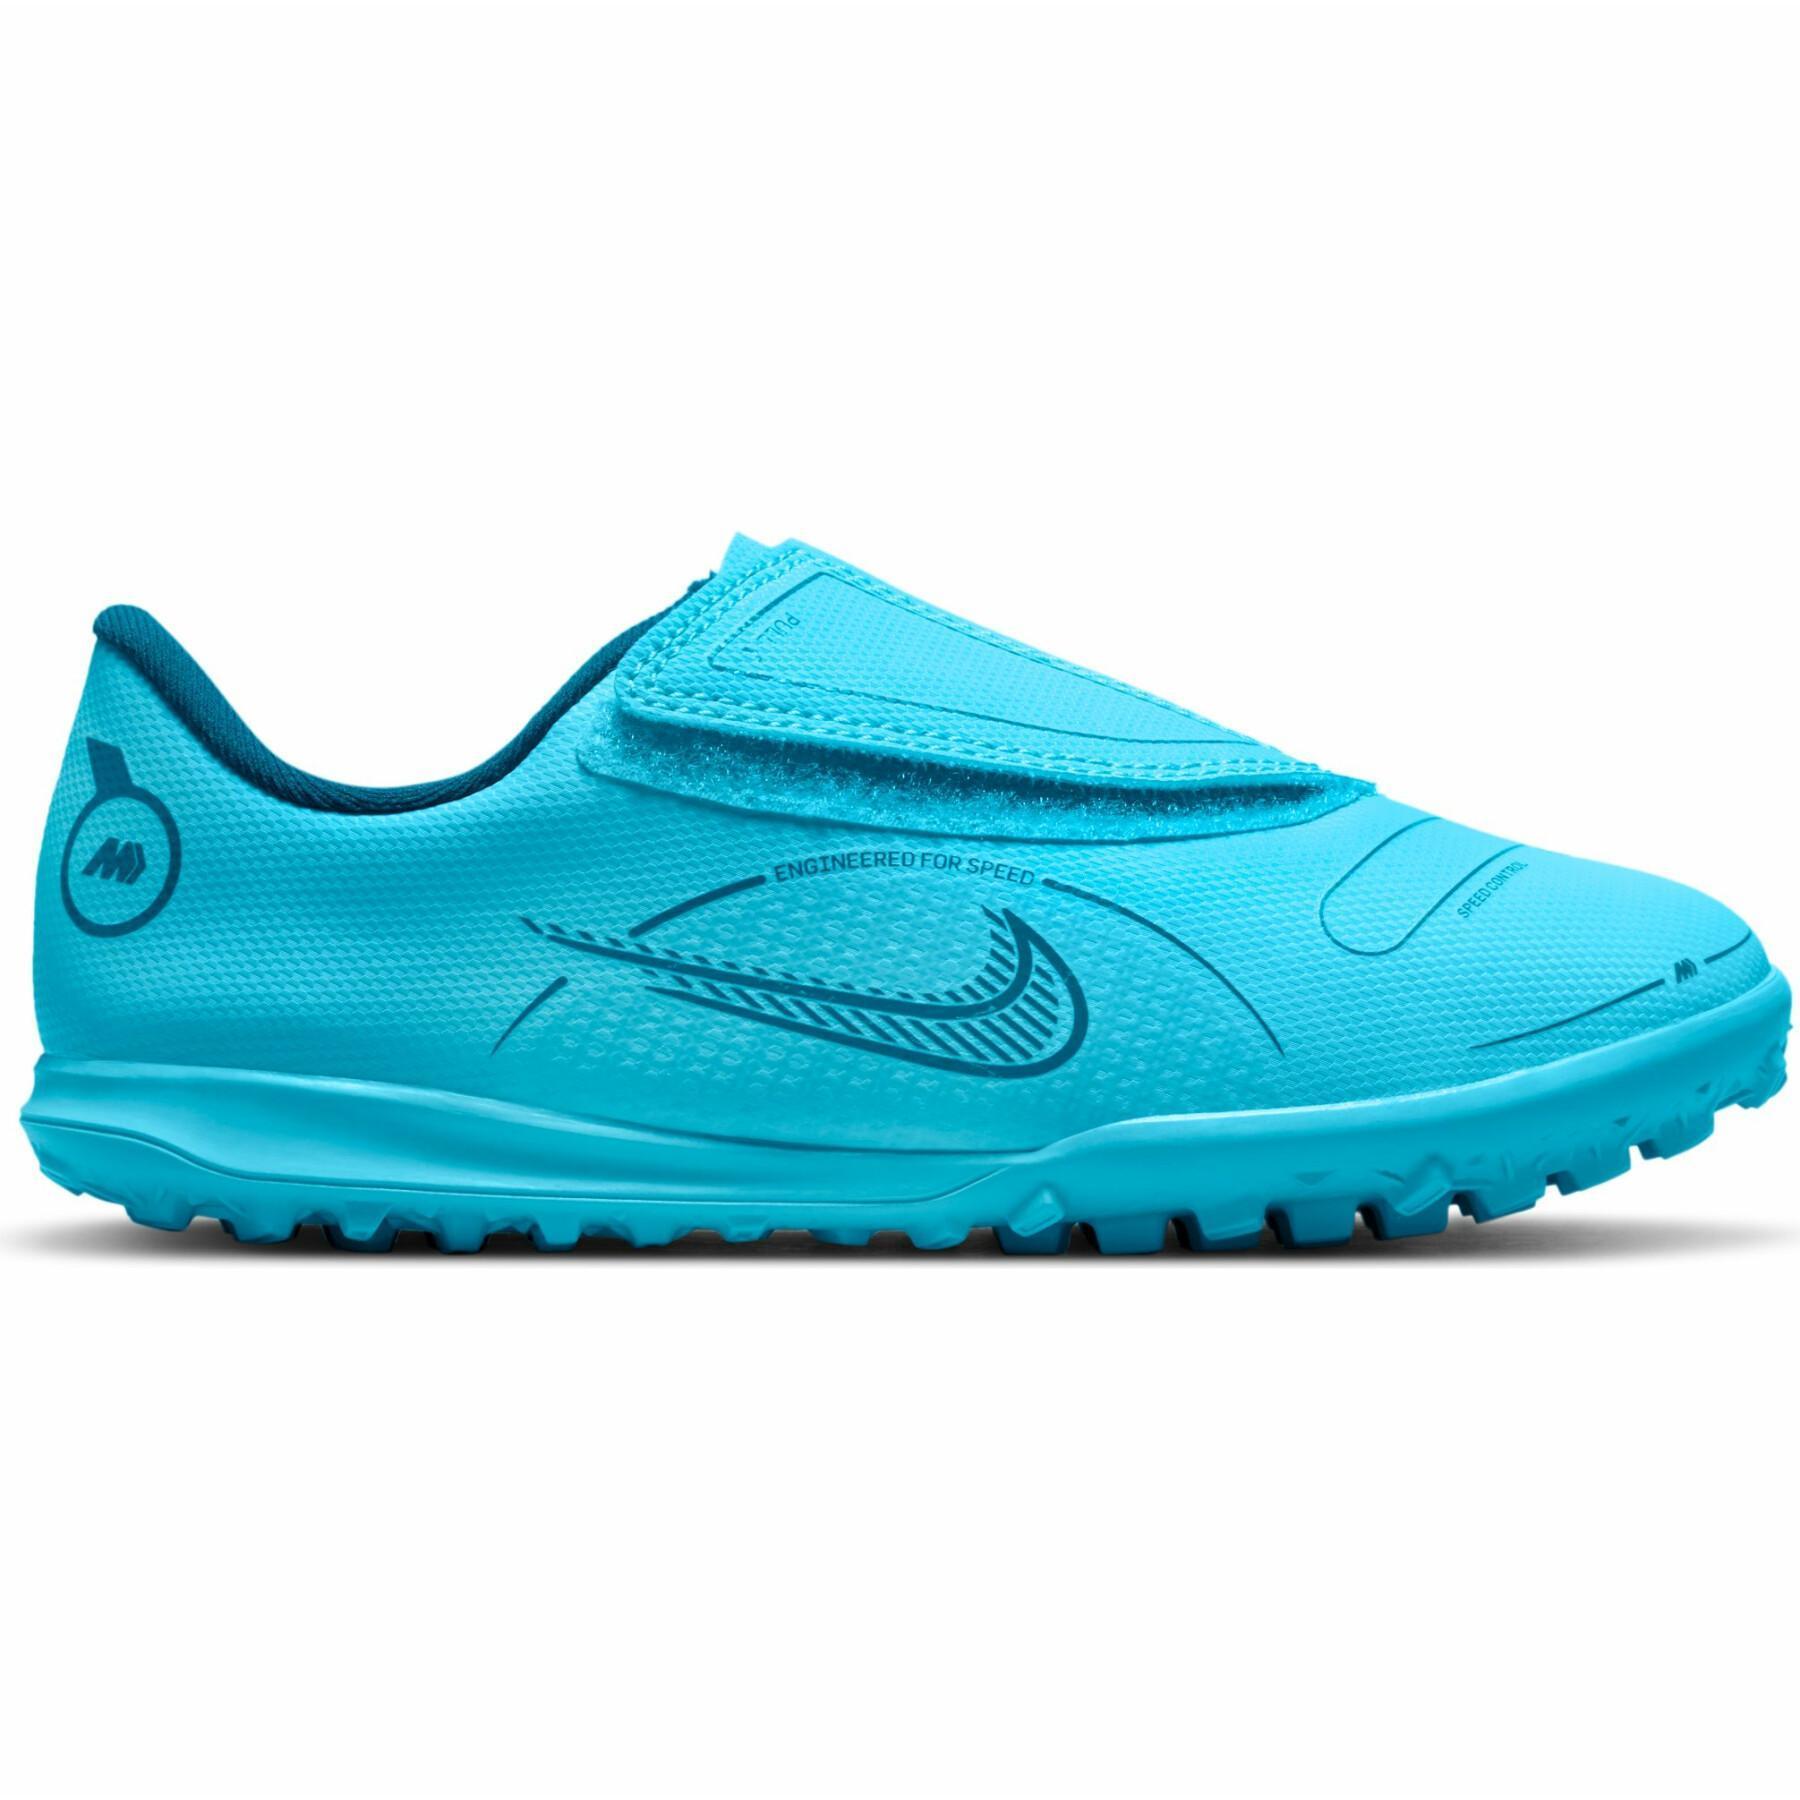 Sapatos de futebol para crianças Nike Jr. Mercurial Vapor 14 Club TF -Blueprint Pack